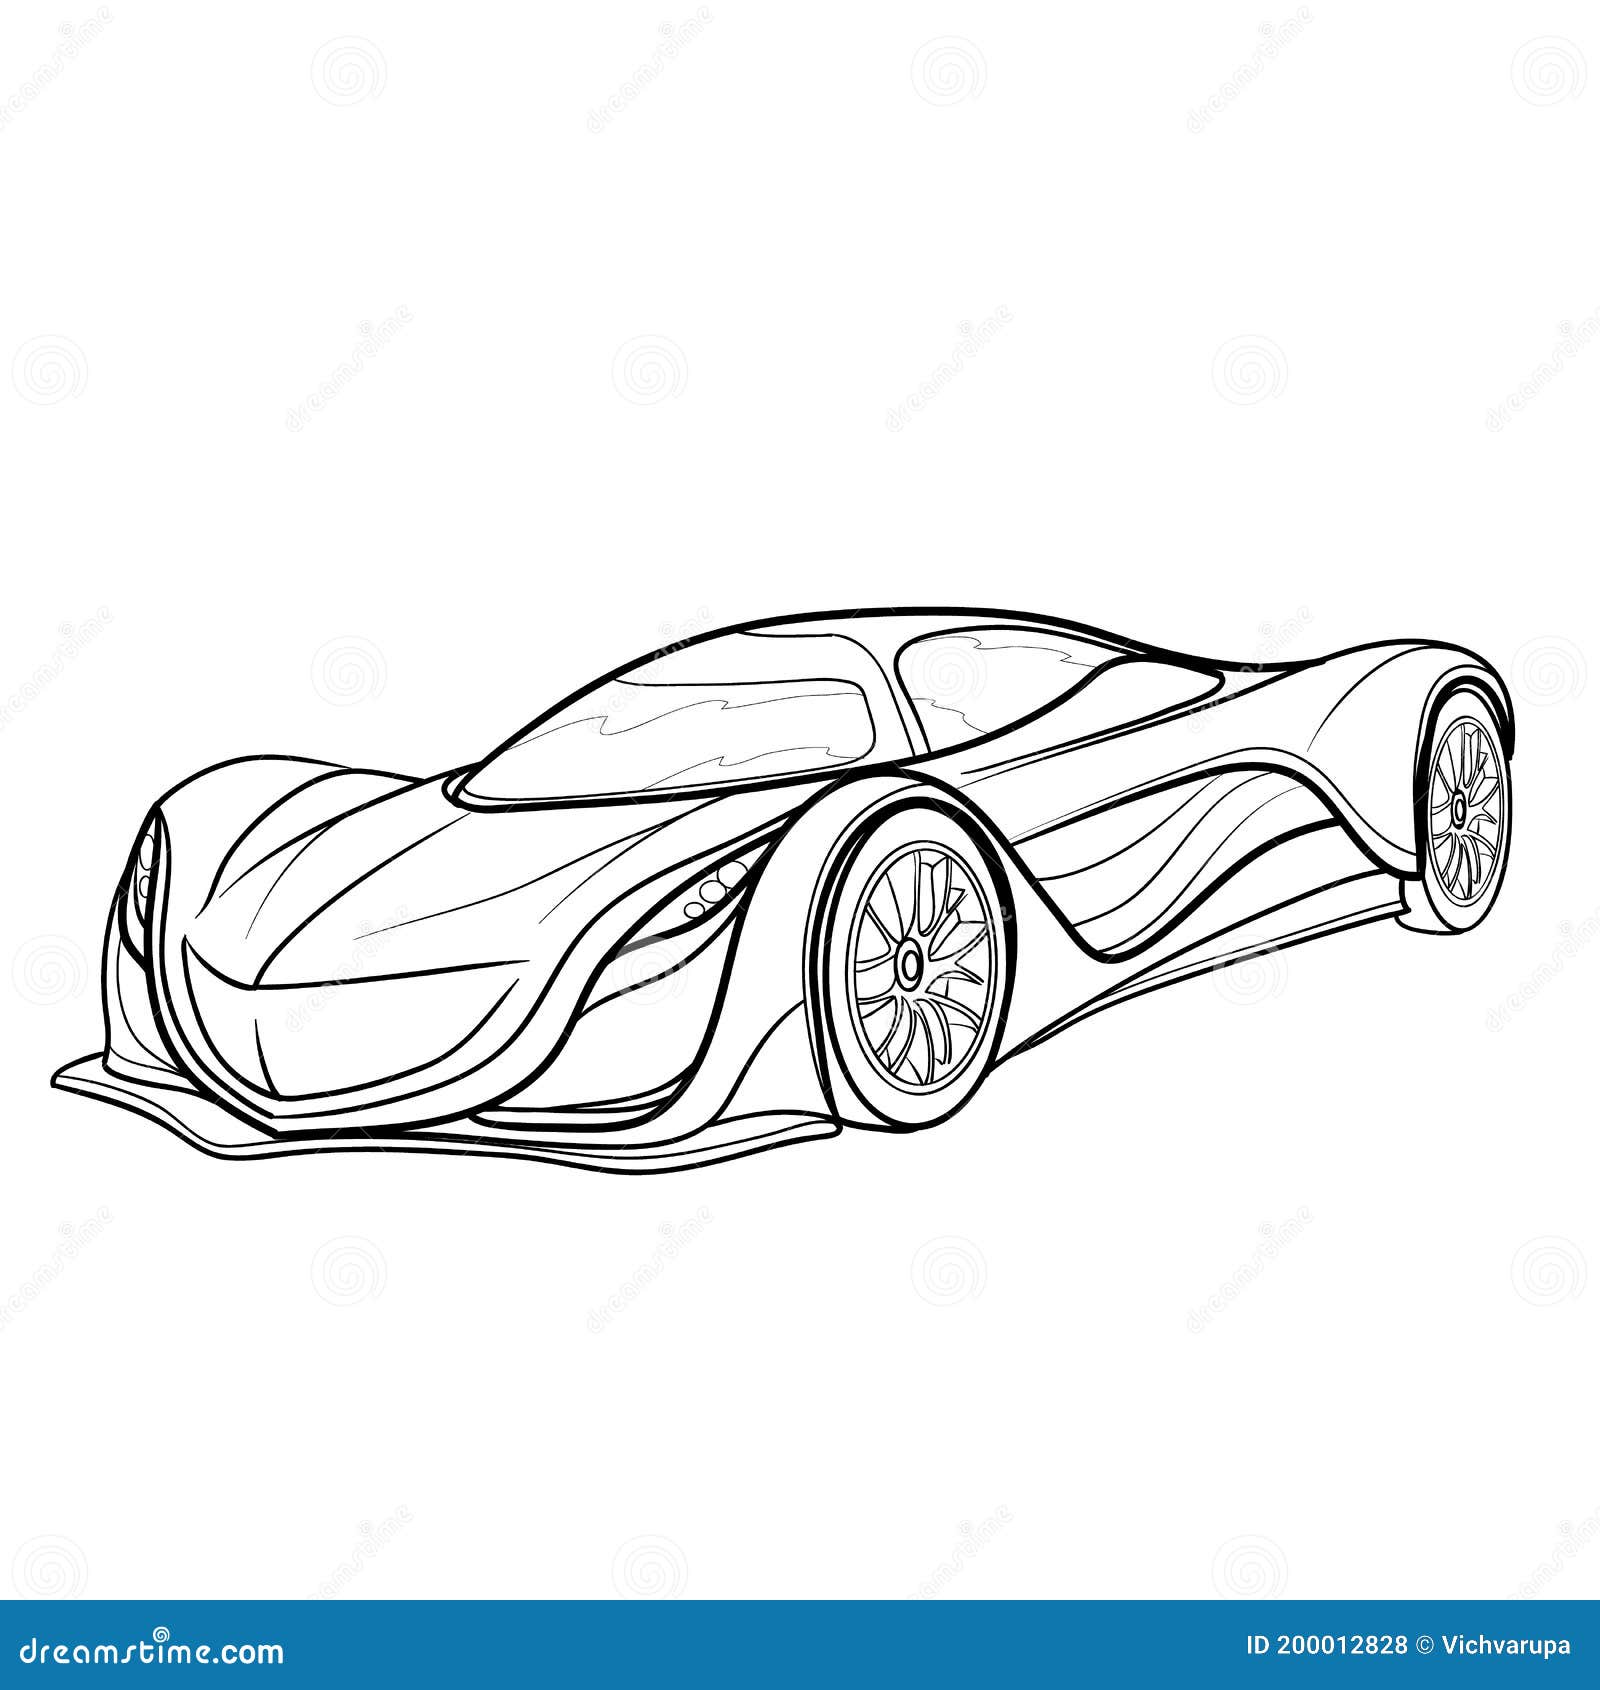 Custom Car Drawing Original Drawings Car Artwork Gift - Etsy